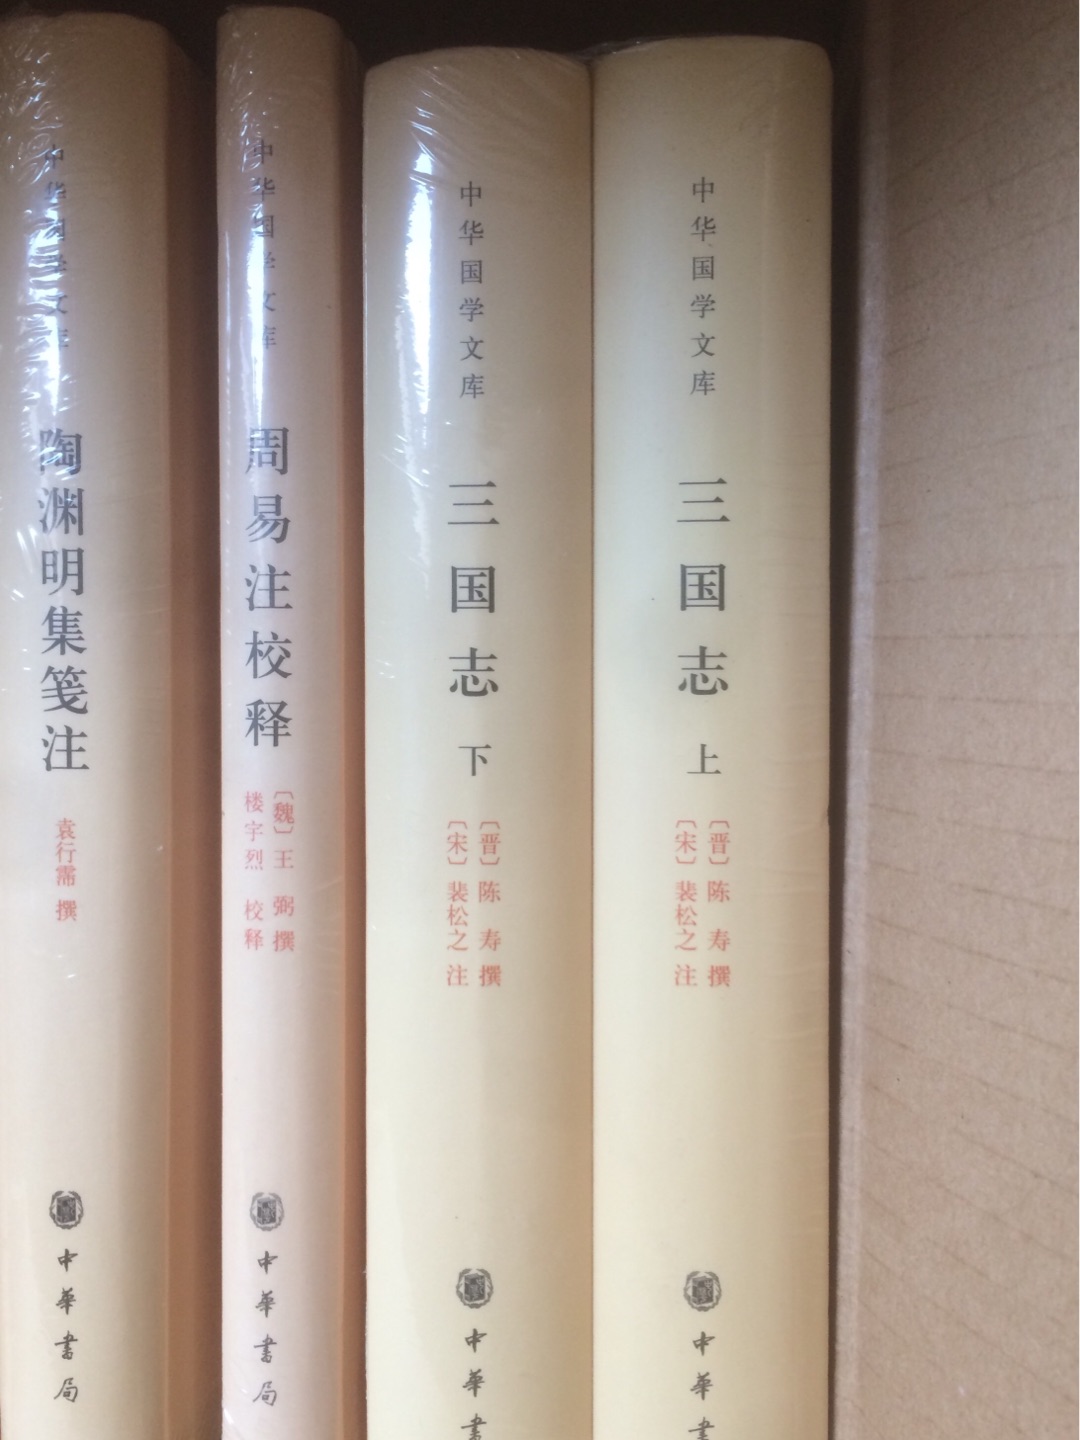 中华书局的国学文库系列精装，很不错。